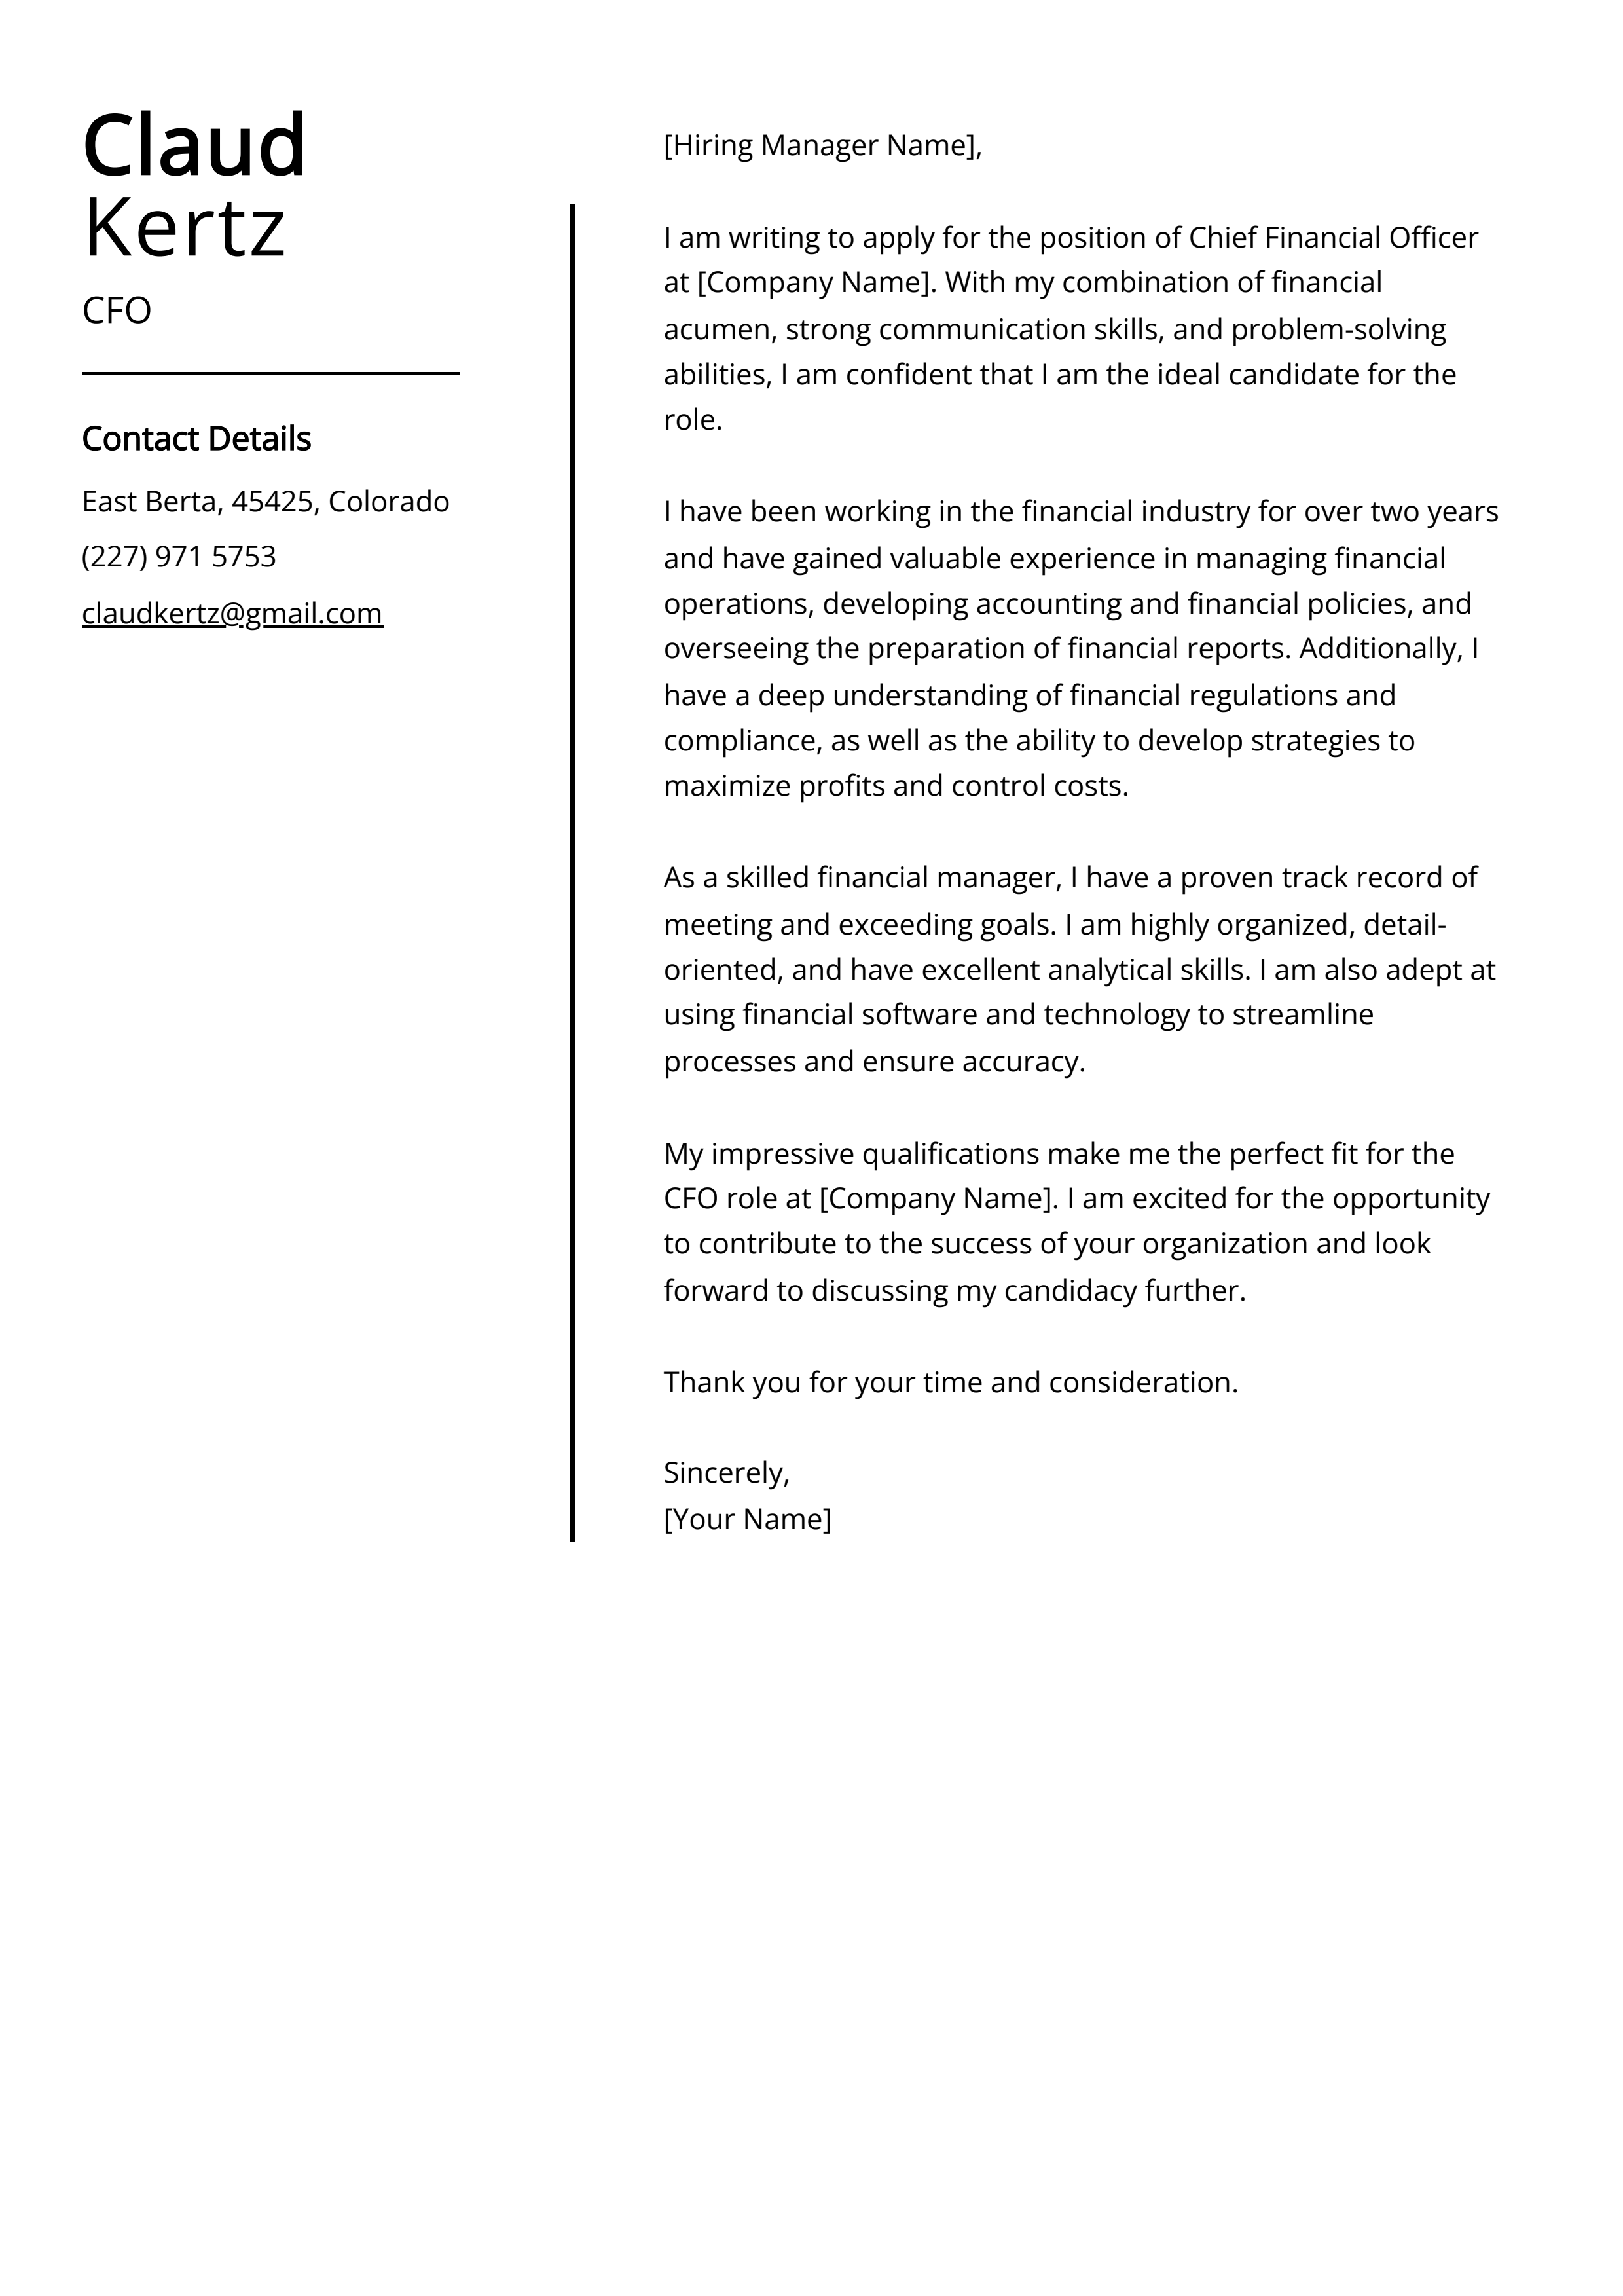 CFO Cover Letter Example